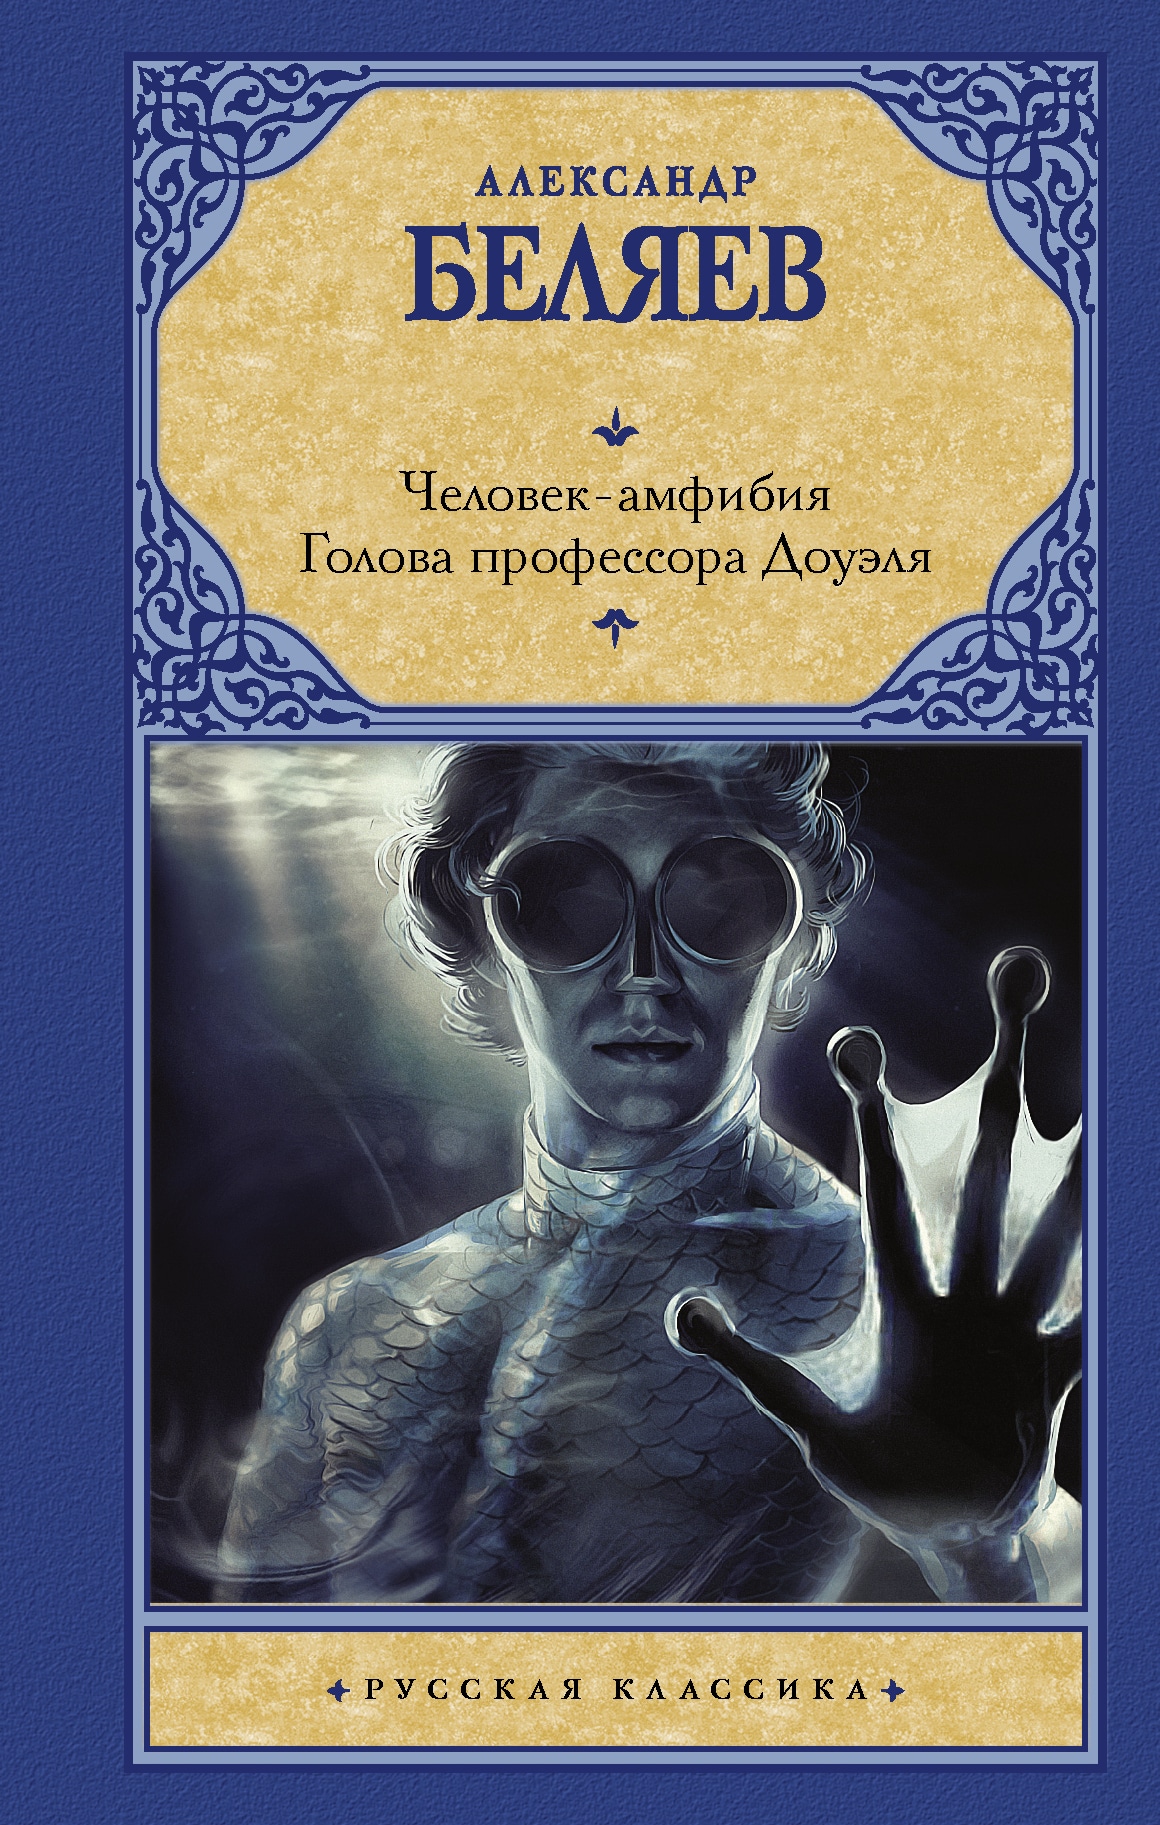 Книга «Человек-амфибия. Голова профессора Доуэля» Александр Беляев — 19 декабря 2011 г.